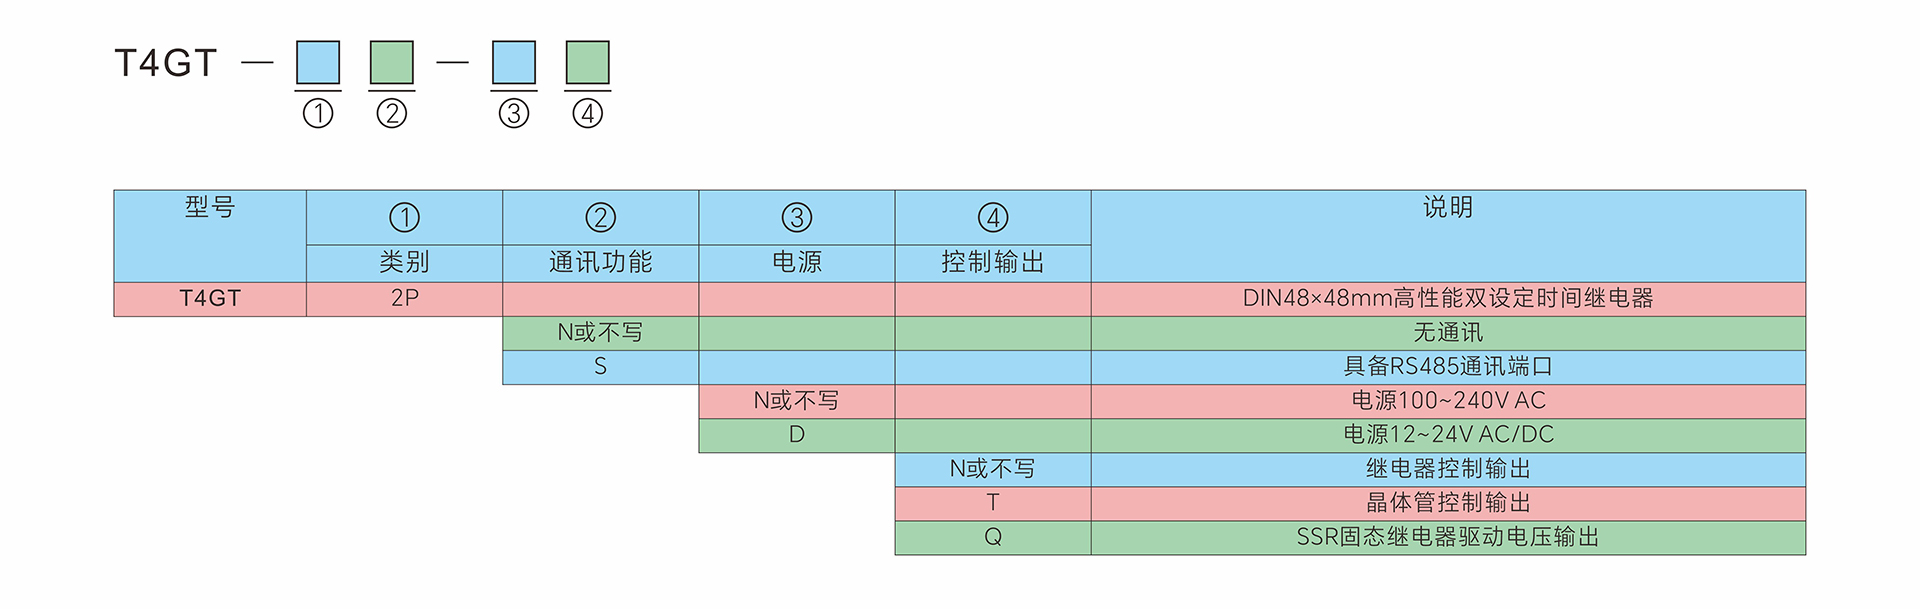 T4GT-2P-型号定义-中文.jpg